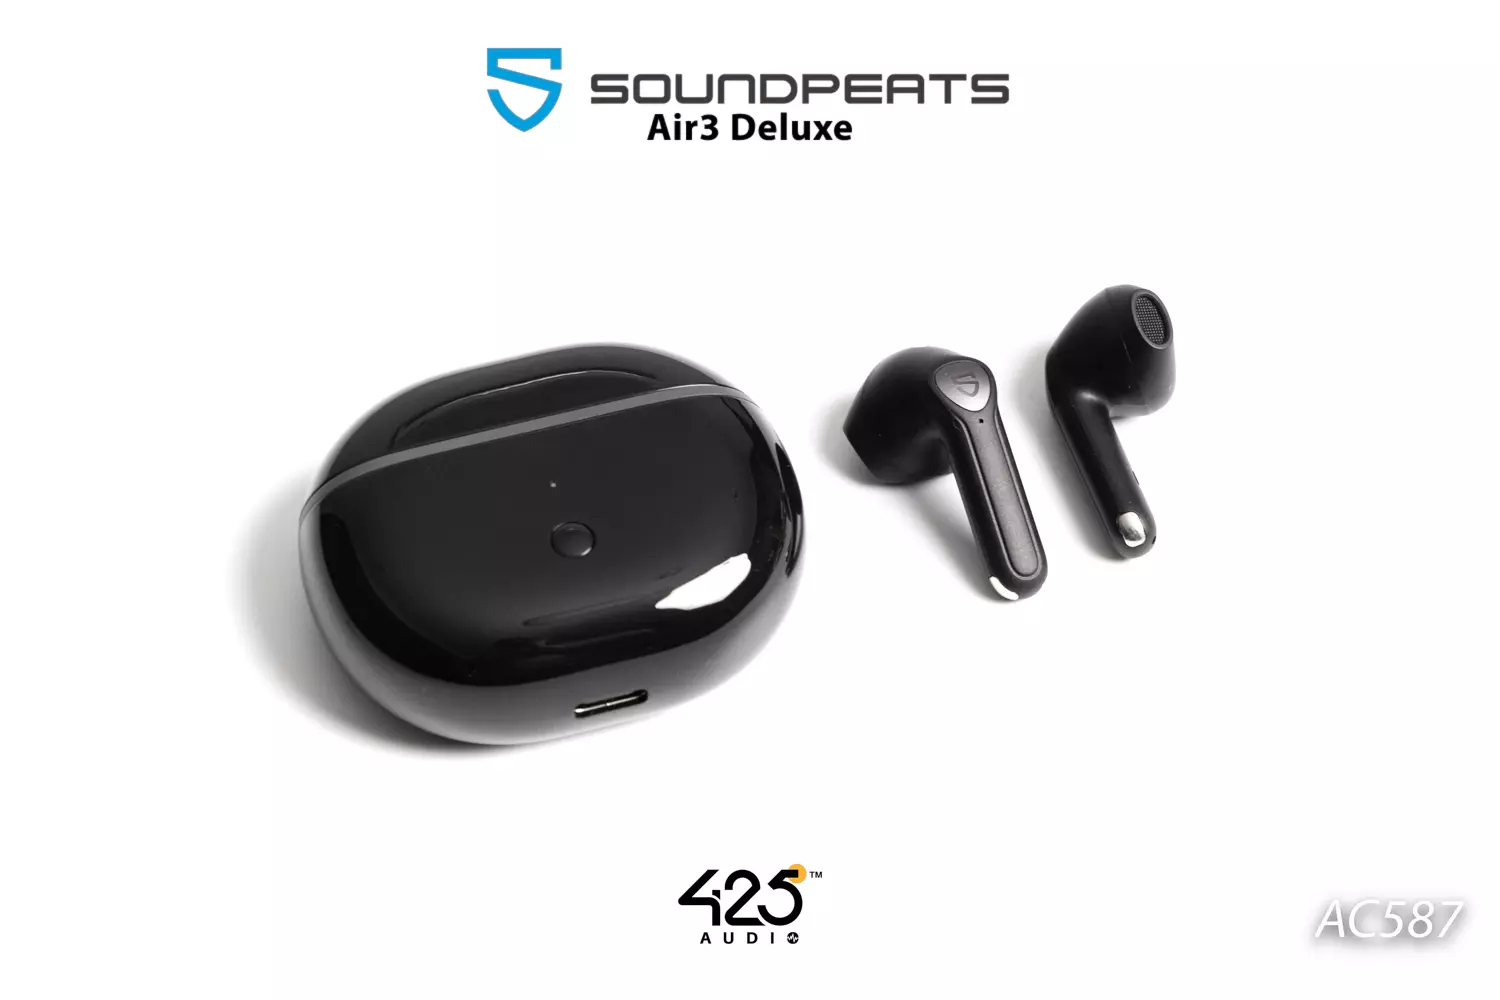 SoundPEATS Air3 ทรง earbud เบสแน่น ไมค์ 4 ตัวคุยชัด เซนเซอร์ถอด